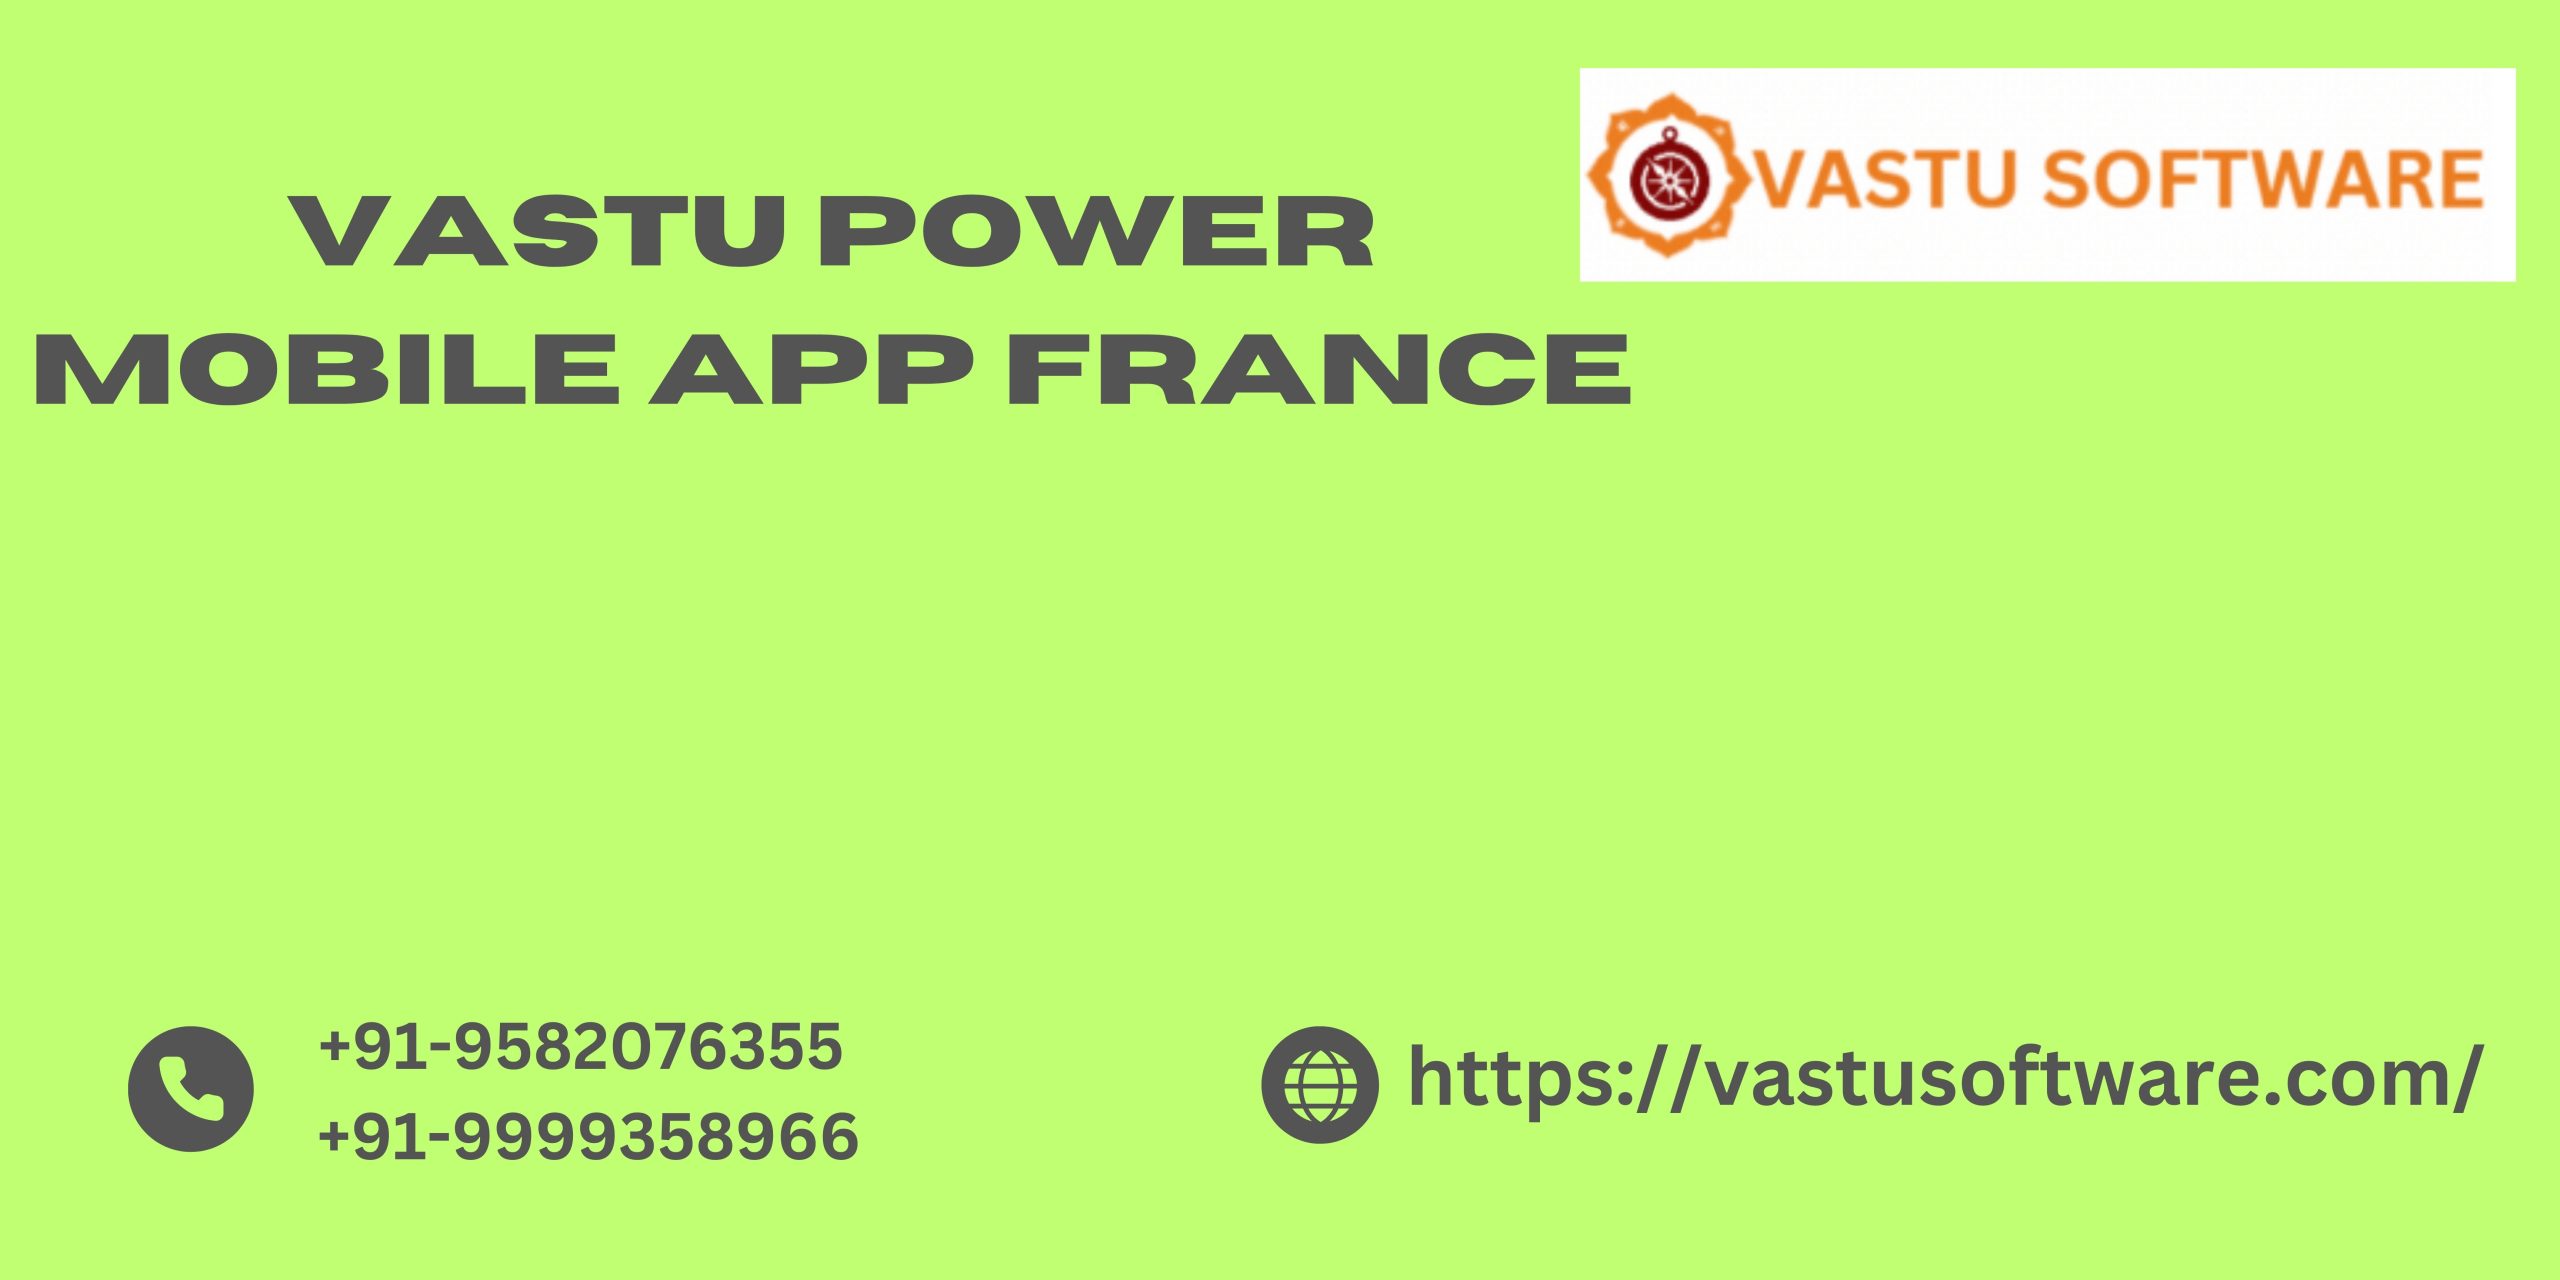 vastu power mobile app france